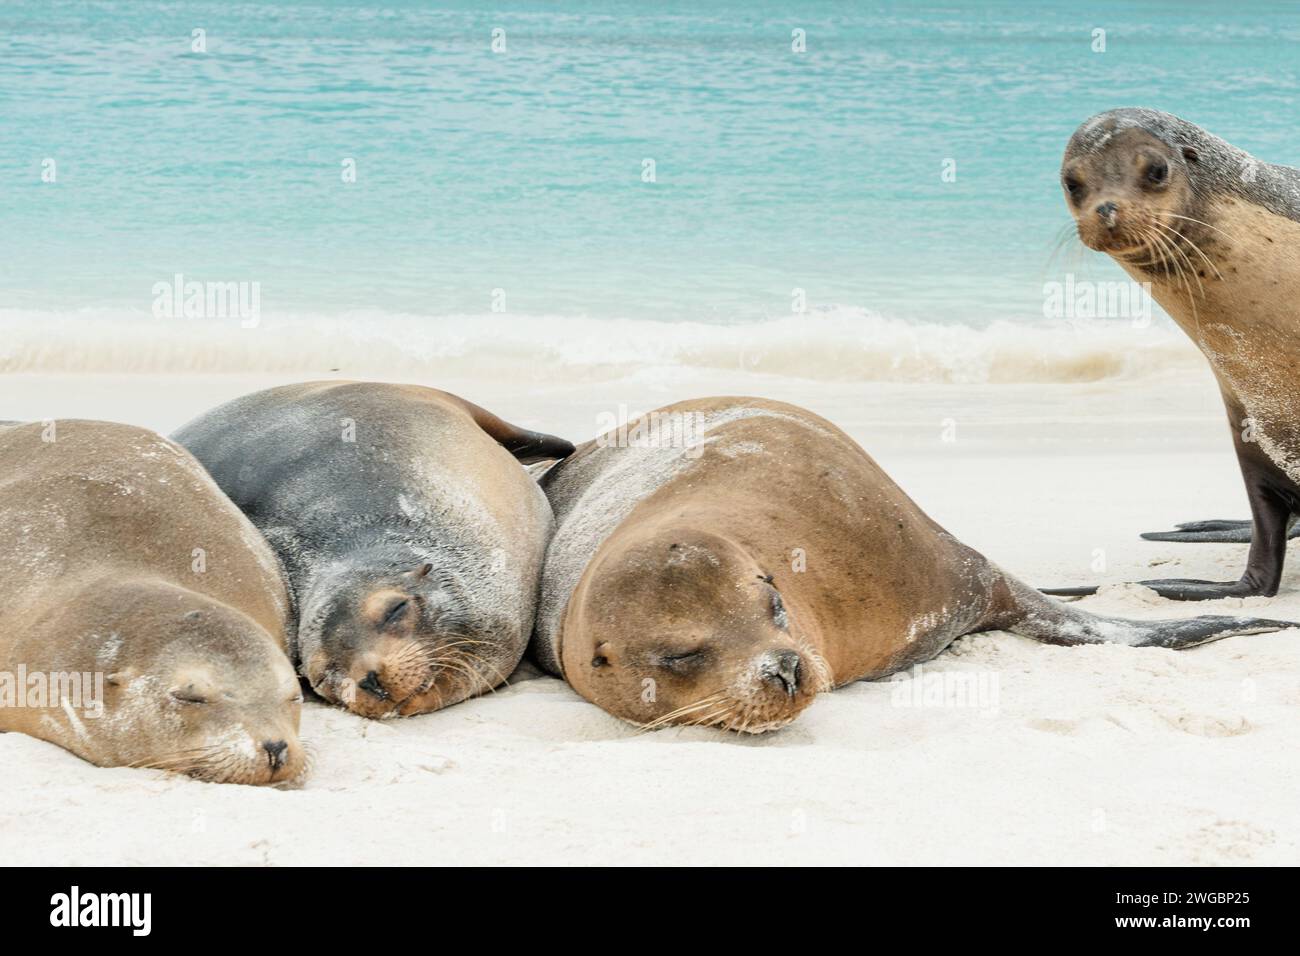 Réveille-toi ! curieux drôle de lion de mer crash la photo de 3 lions de mer endormis à l'océan pacifique des galapagos Banque D'Images